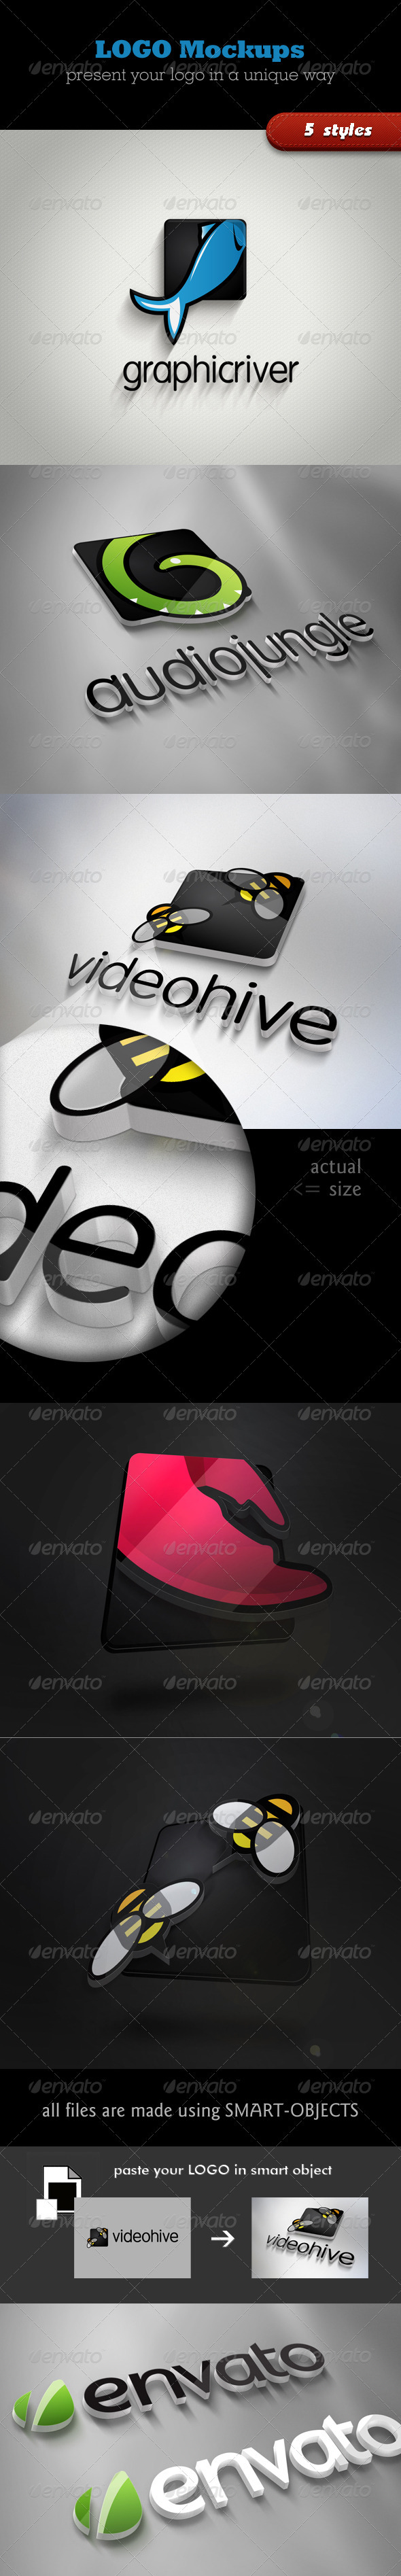 Download Graphicriver | 3D Logo Mockups Free Download